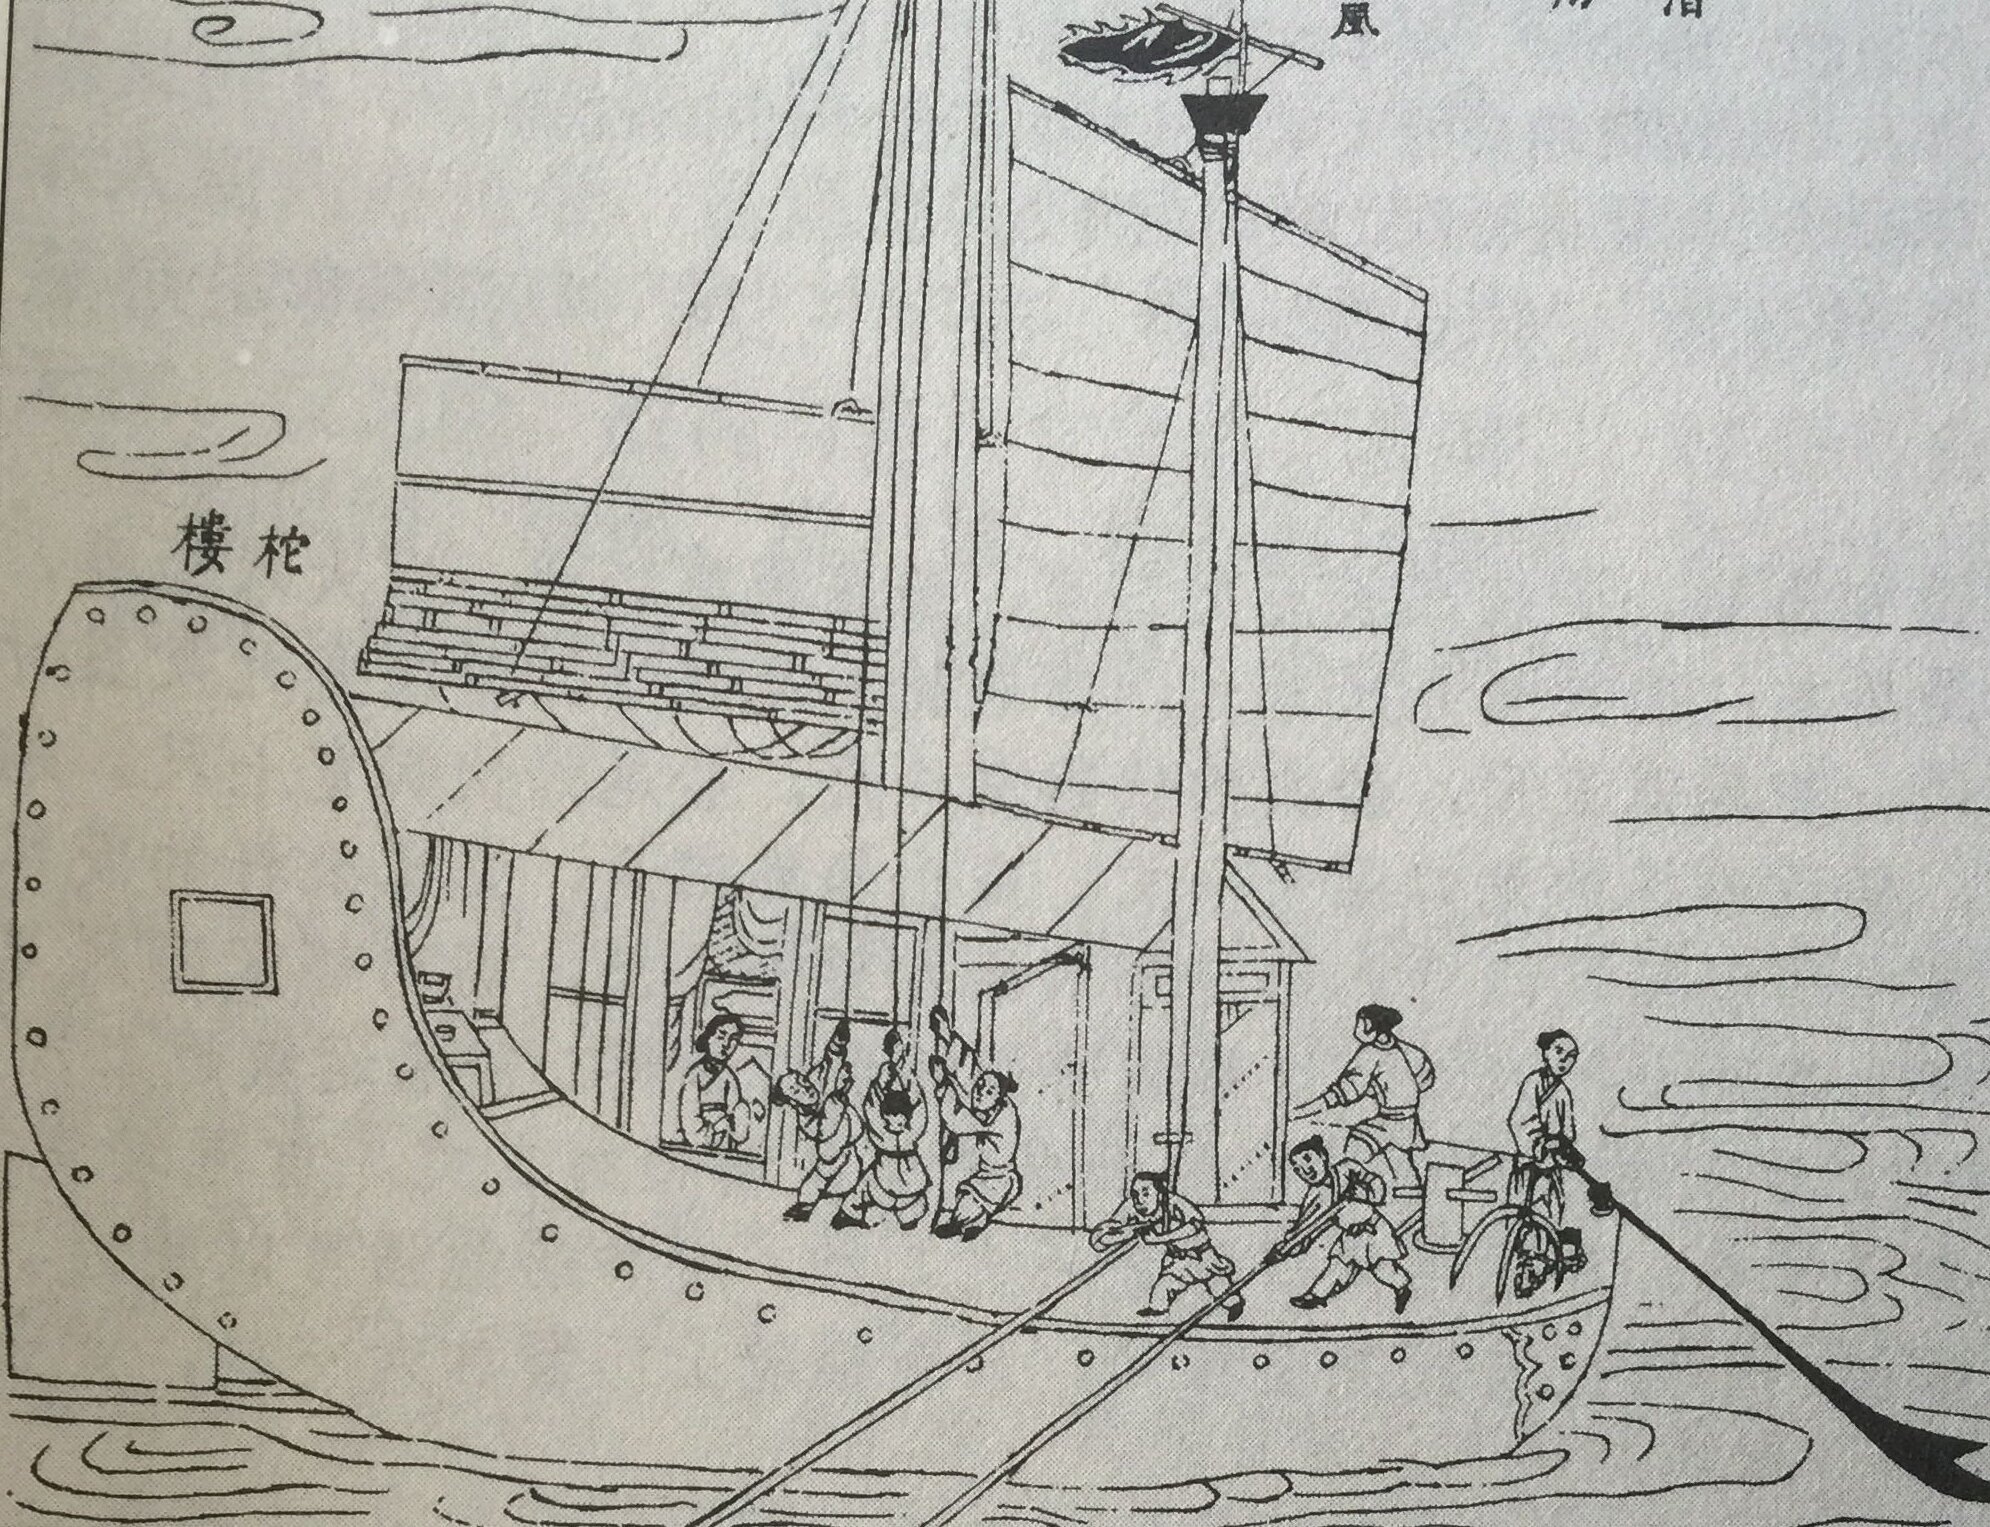 《天工开物》中记载的明代漕船式样